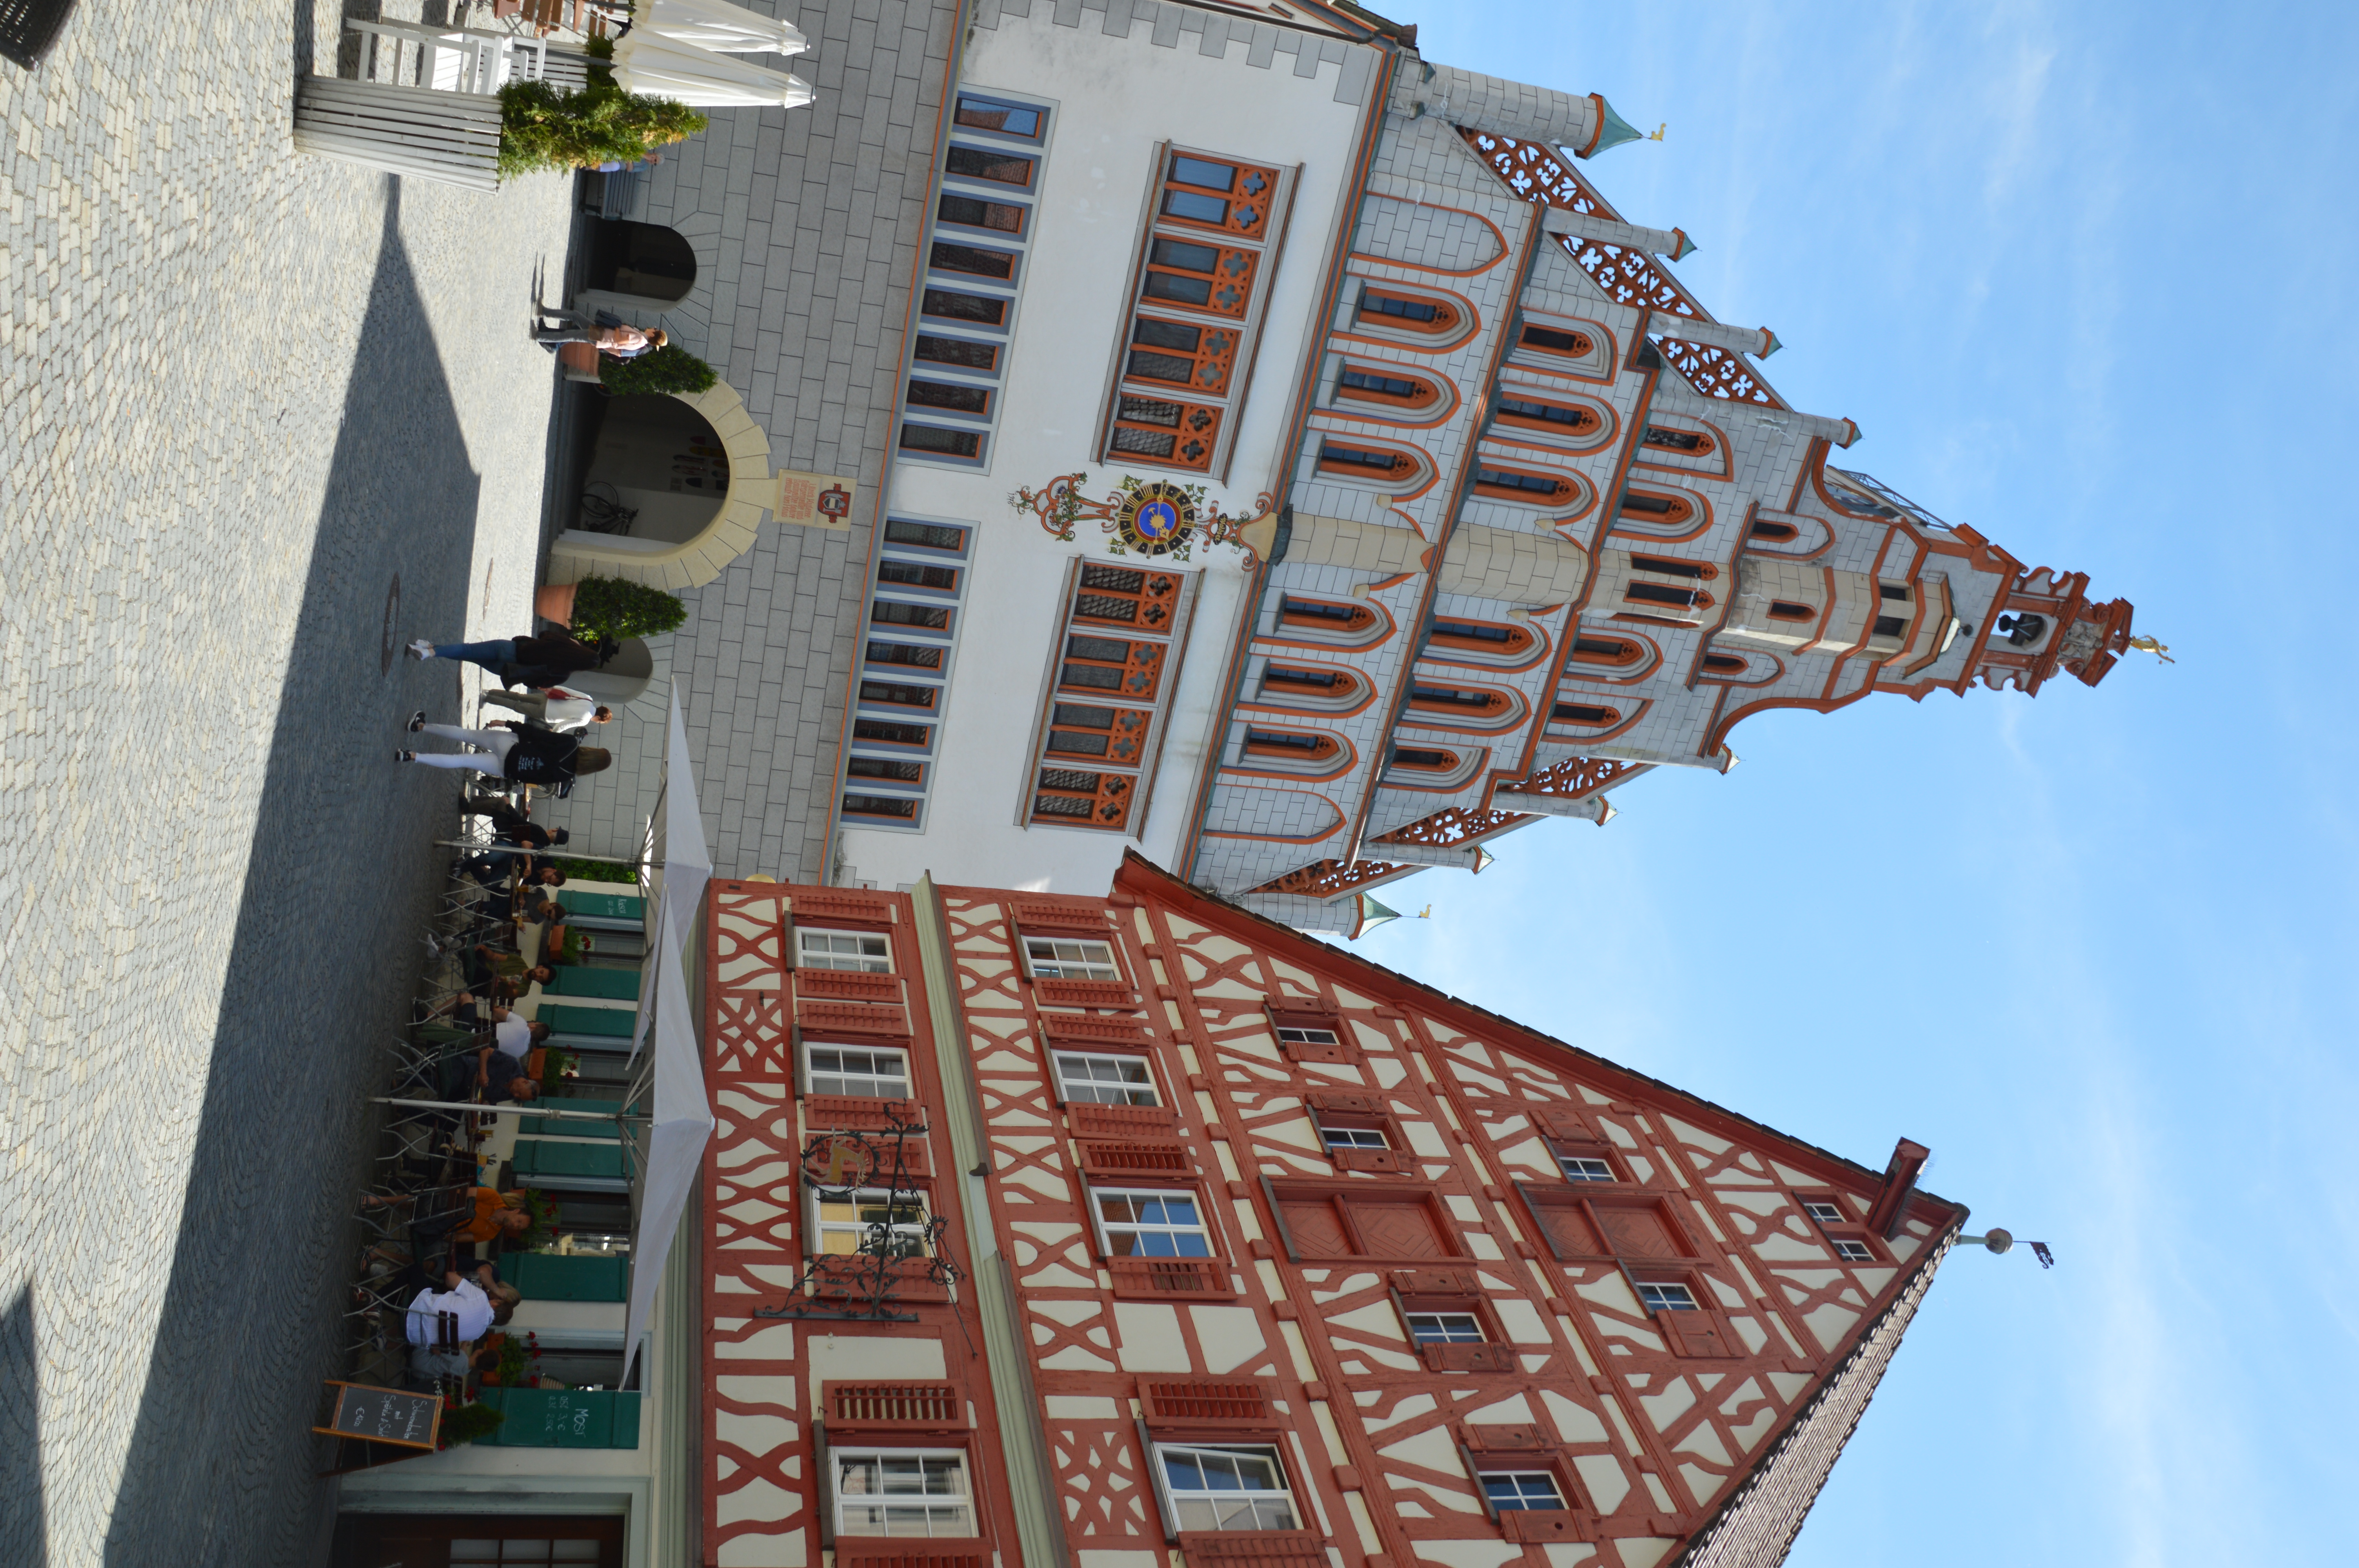 Links: Rathaus
Rechts: Wirtshaus